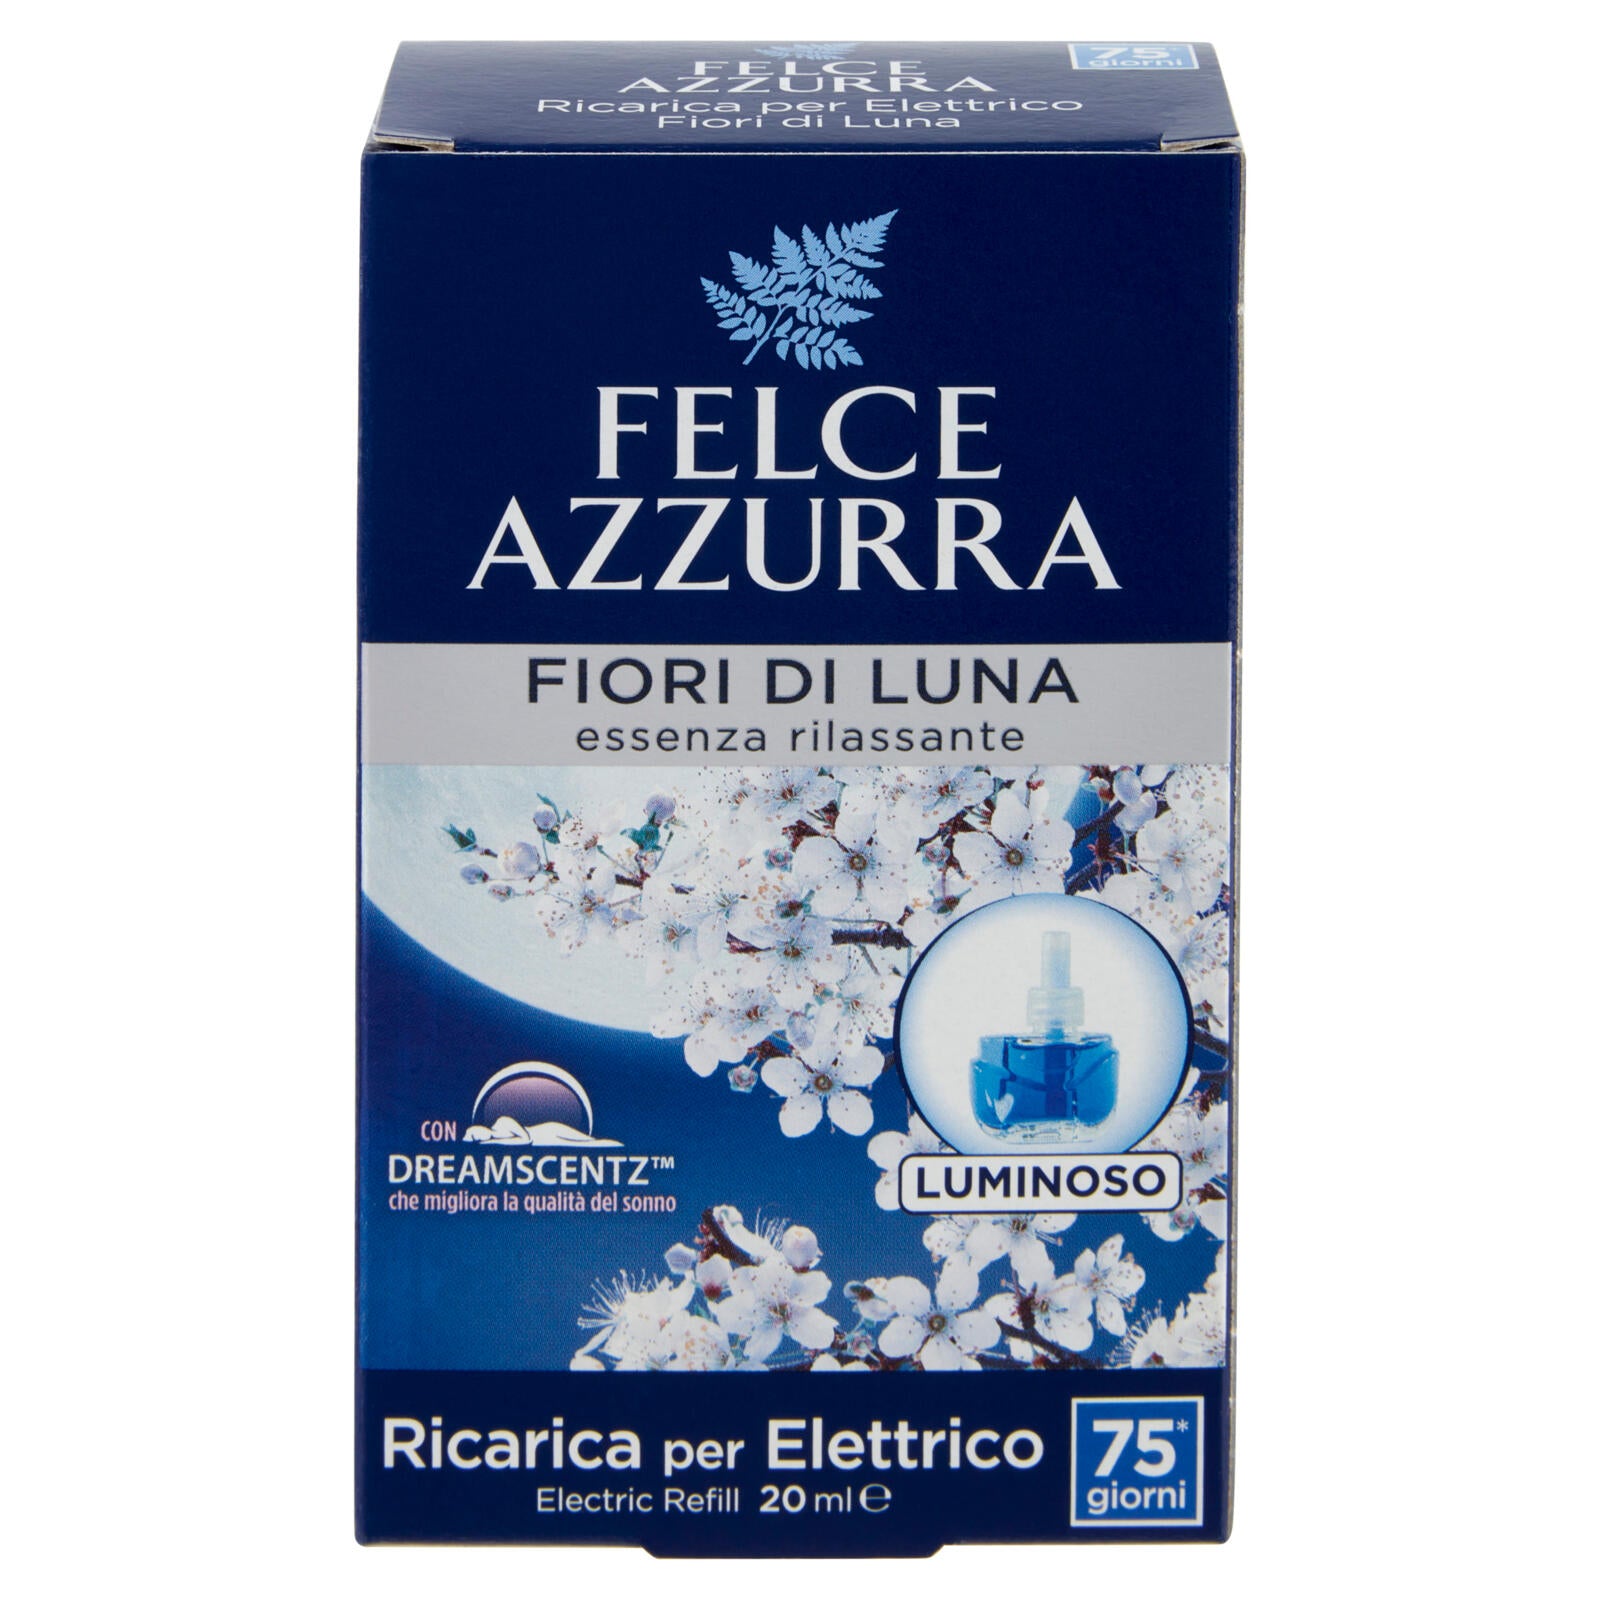 Felce Azzurra Fiori di Luna Ricarica per Elettrico 20 ml ->